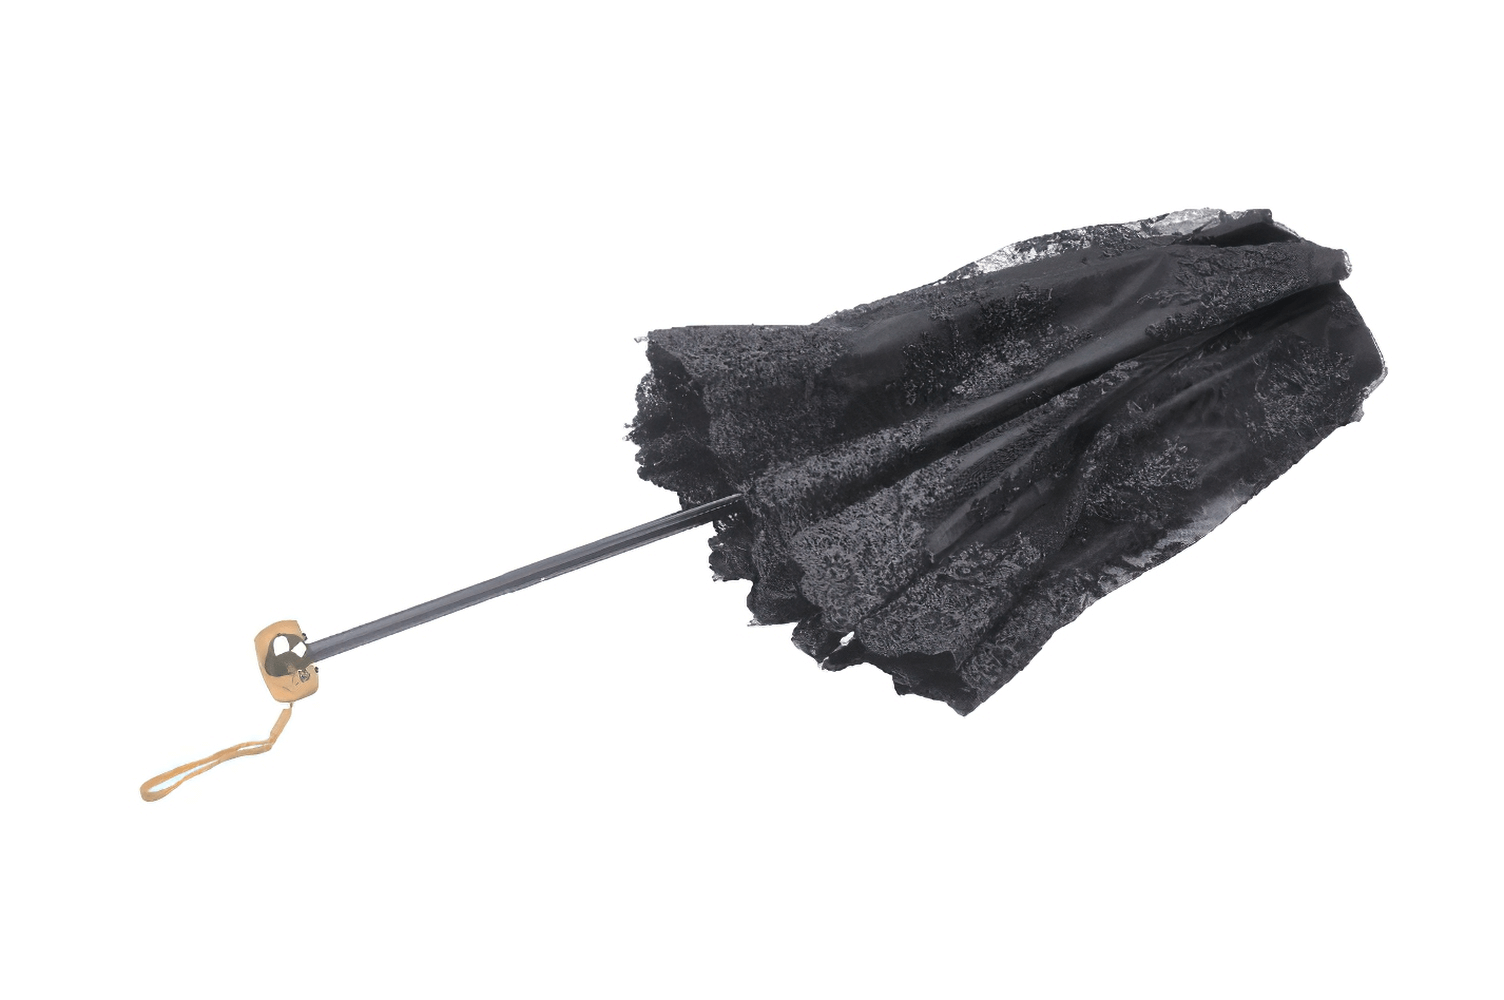 Parapluie gothique vintage avec bordure en dentelle et poignée en bois